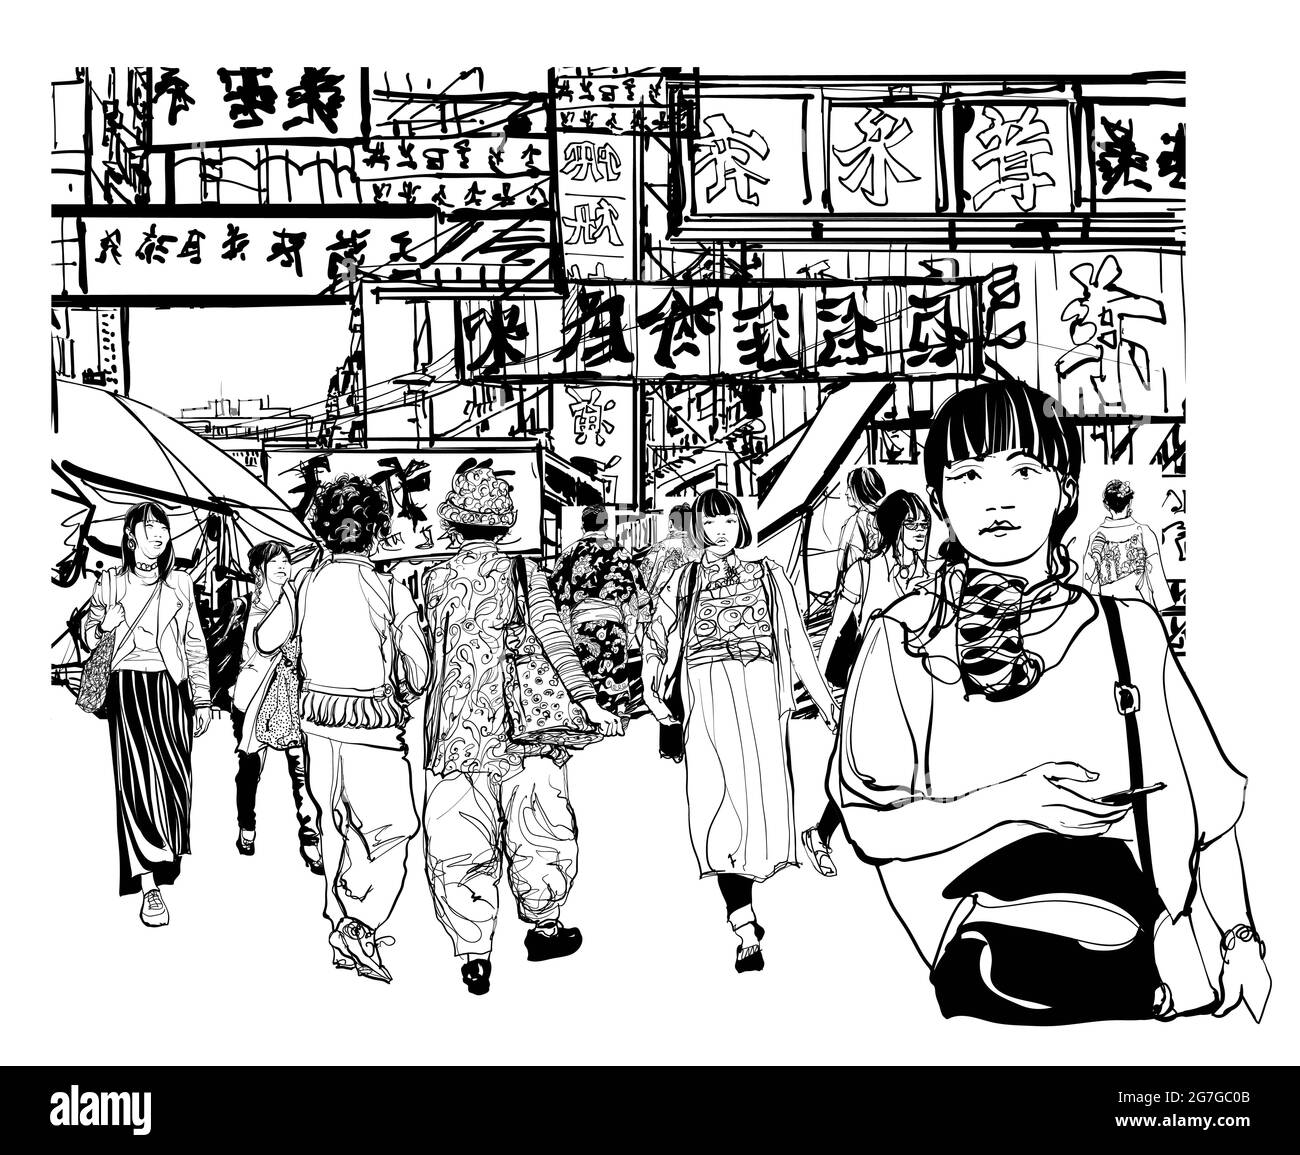 Paysage urbain imaginaire au Japon avec des gens dans une rue - illustration vectorielle - tous les caractères sont fictifs Illustration de Vecteur